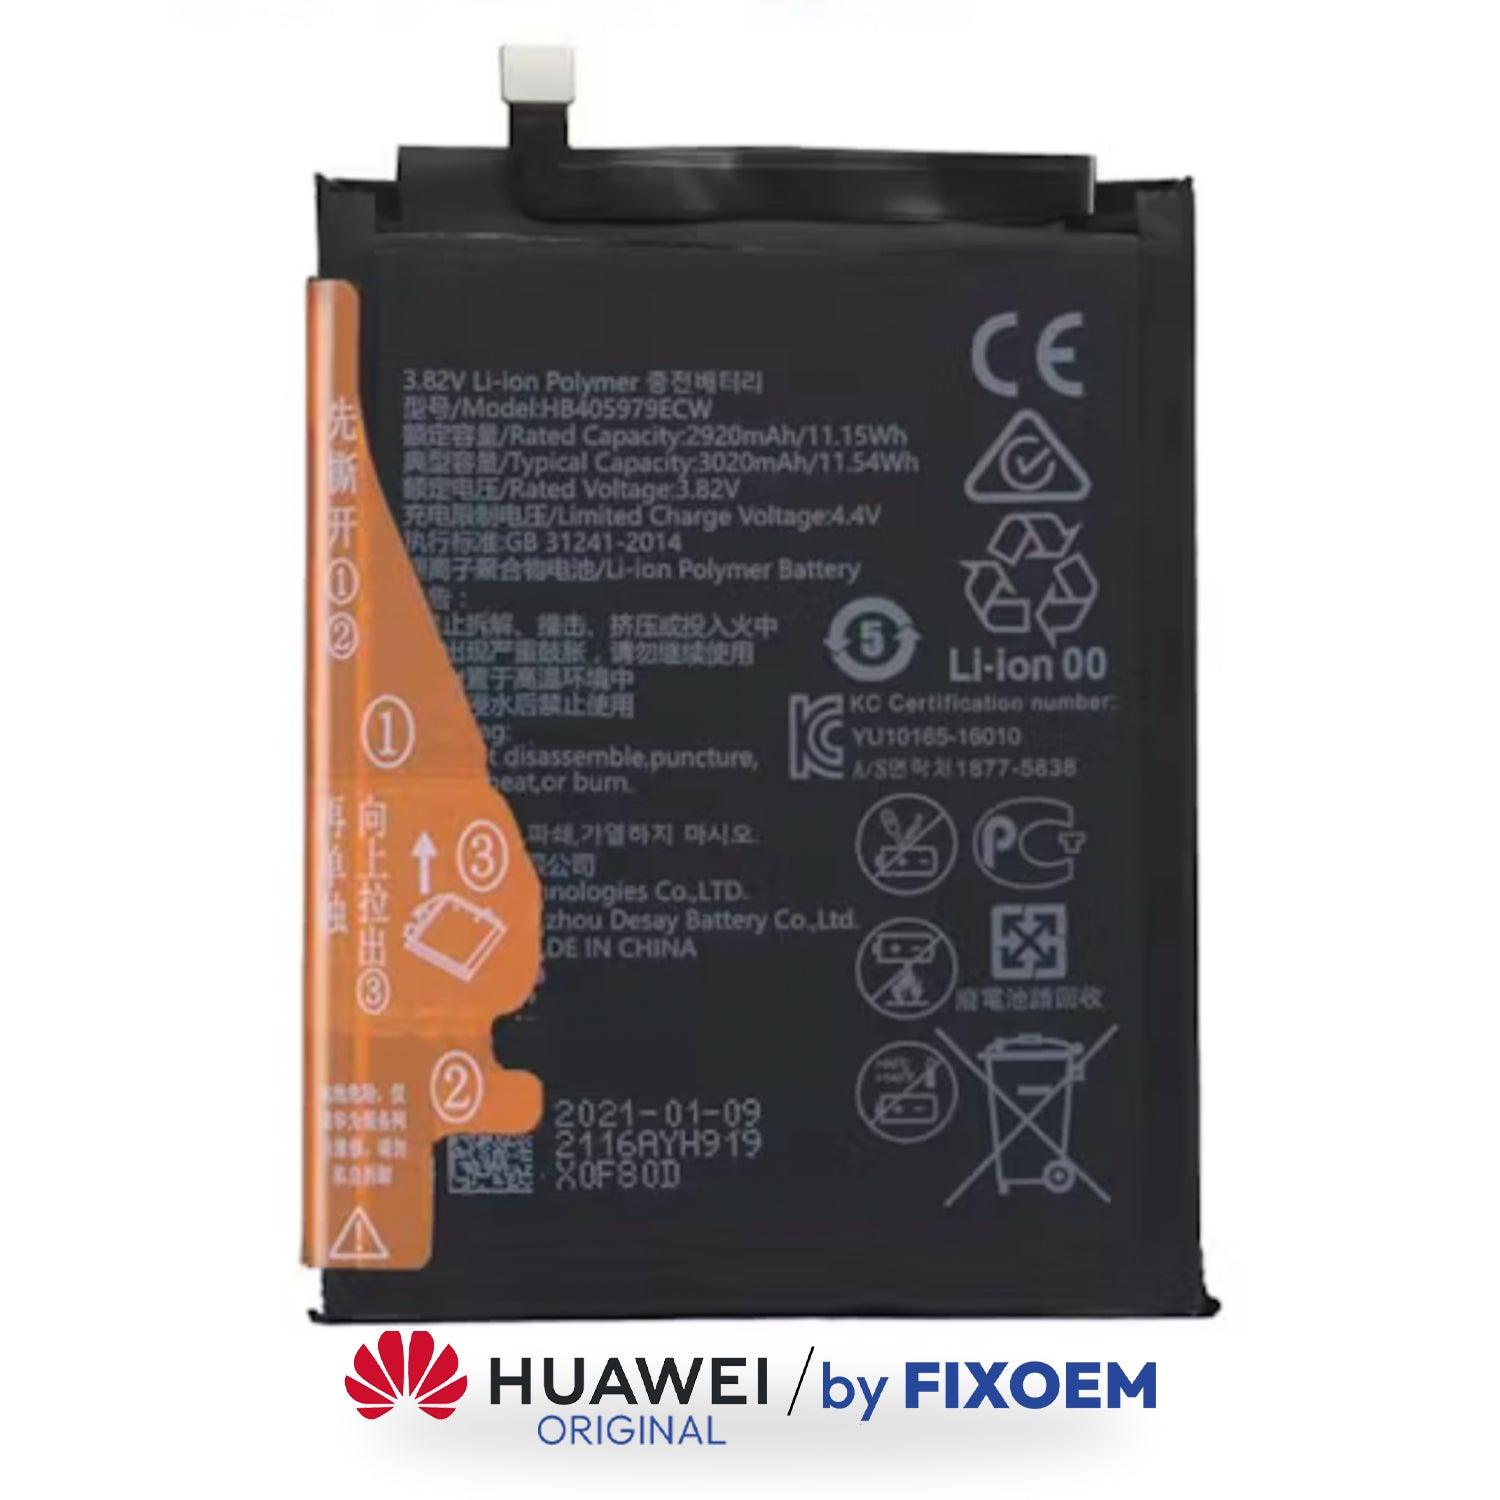 Bateria Huawei Nova Smart / Y5 2018 / Y5 2019 / G Elite Plus / Y5 Pro / Y6 Pro / Y6 2019 / Y5 Neo 2018 / Y6S / Honor 8A Hb405979Ecw |+2,000 reseñas 4.8/5 ⭐